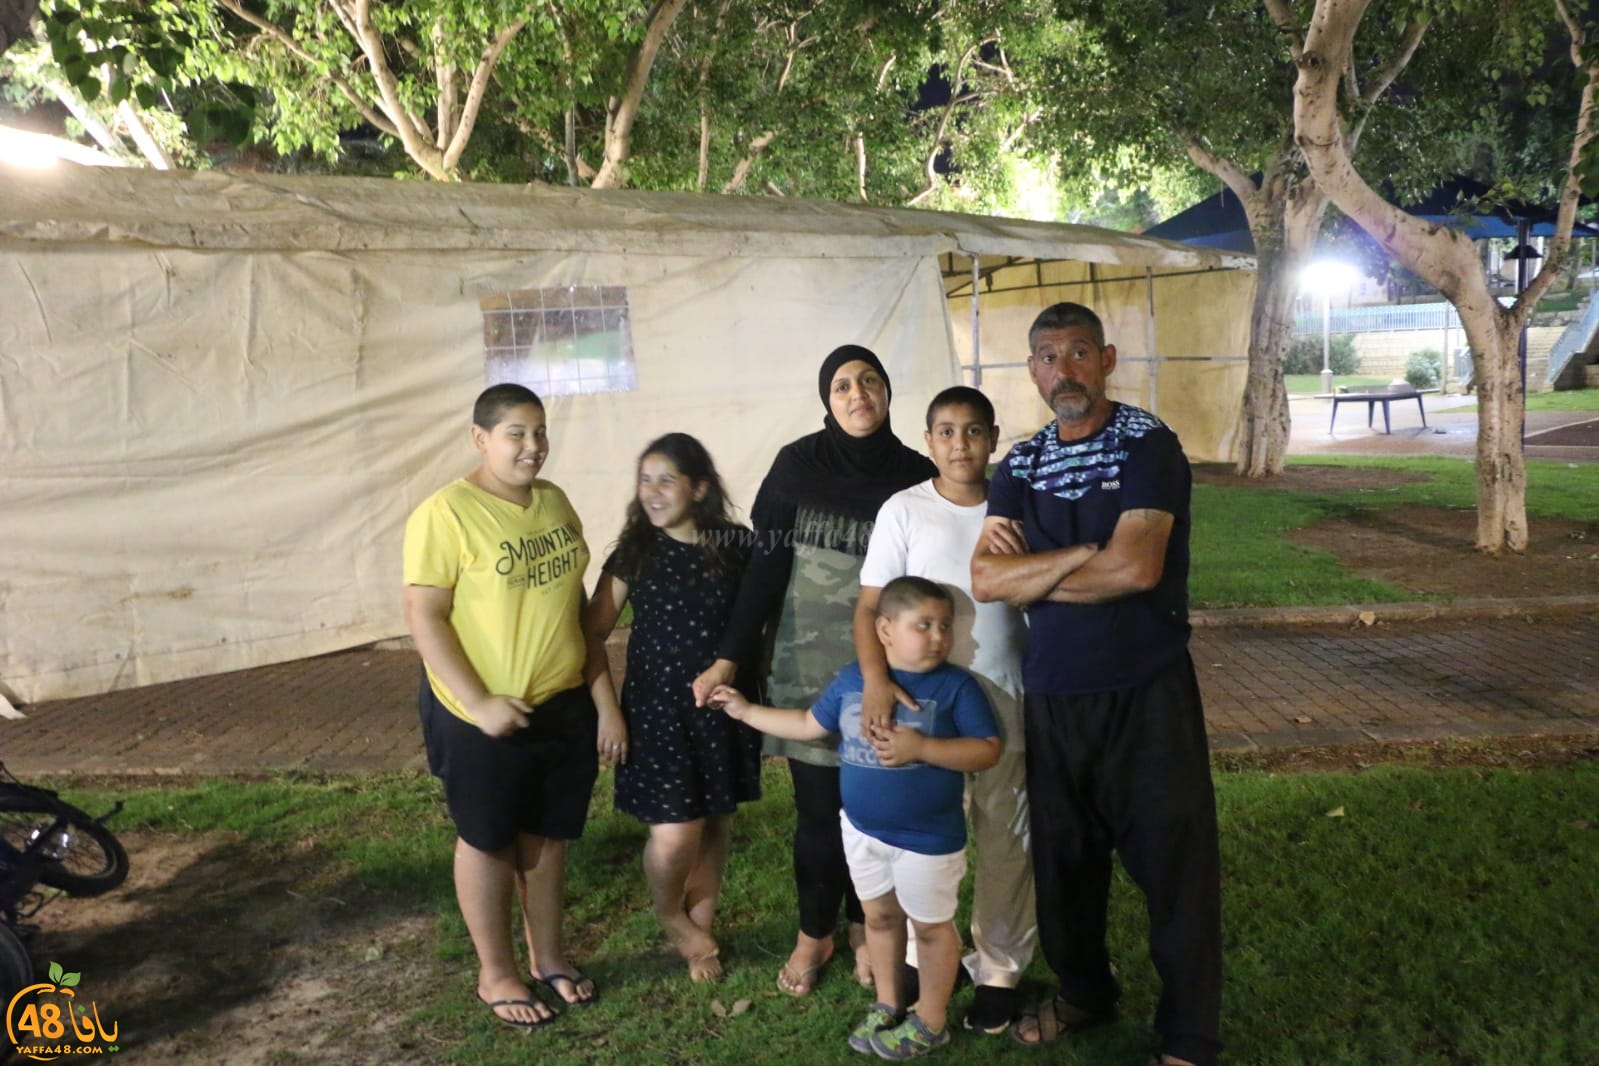  فيديو: بعد القاء عائلتها في الشارع سنبقى في خيمتنا حتى آخر نفس للحصول على مسكن بكرامة 